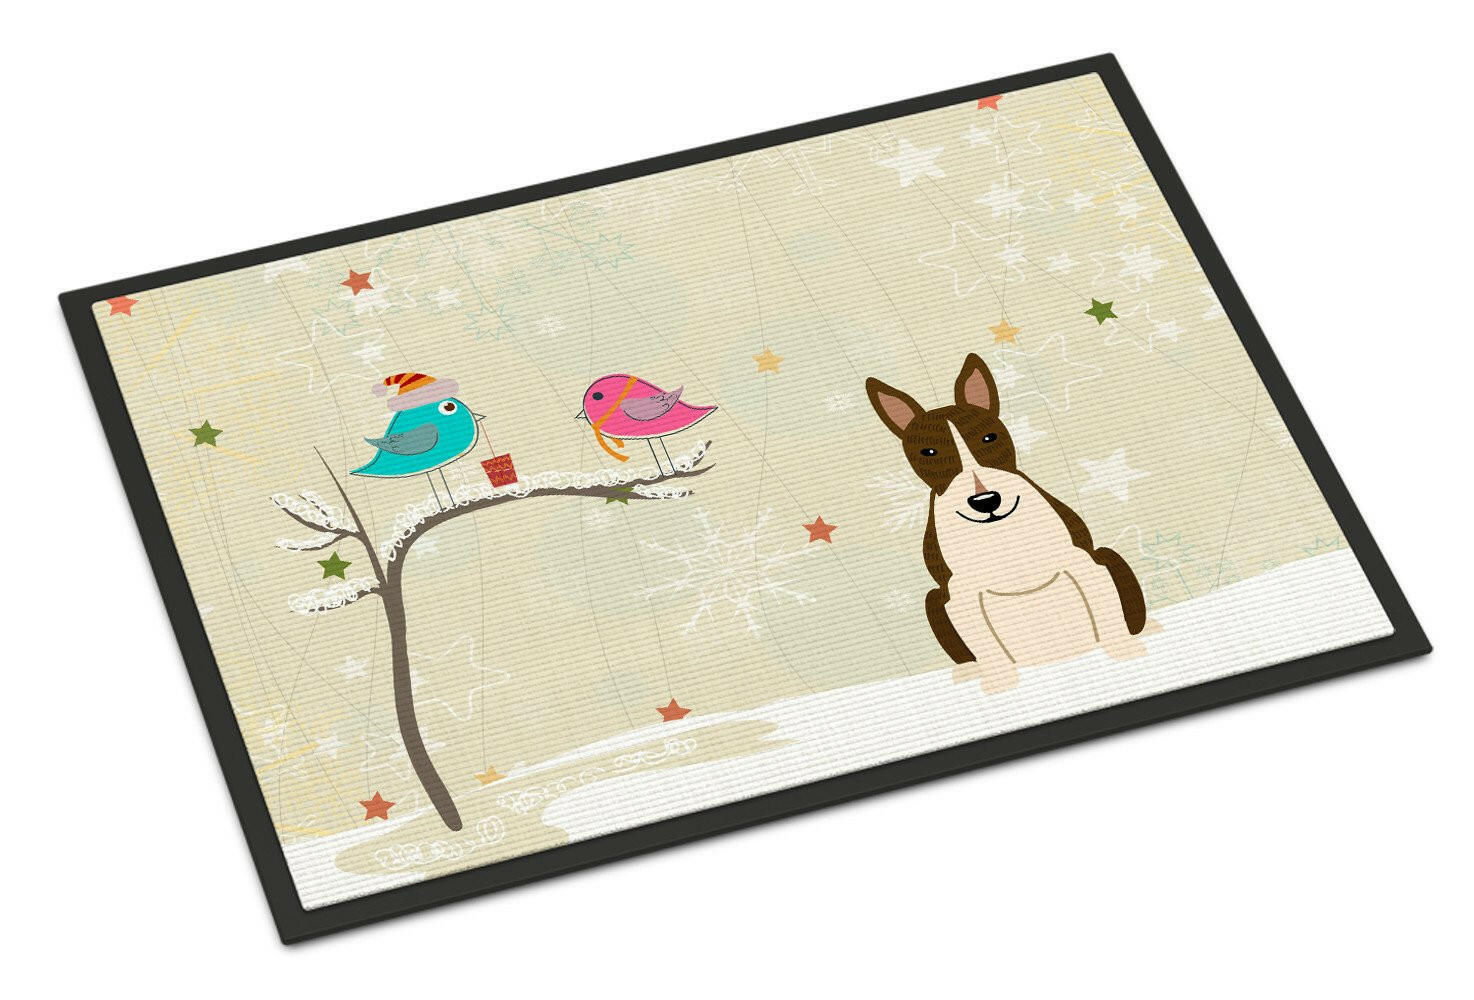 Christmas Presents between Friends Bull Terrier Dark Brindle Indoor or Outdoor Mat 24x36 BB2608JMAT - the-store.com